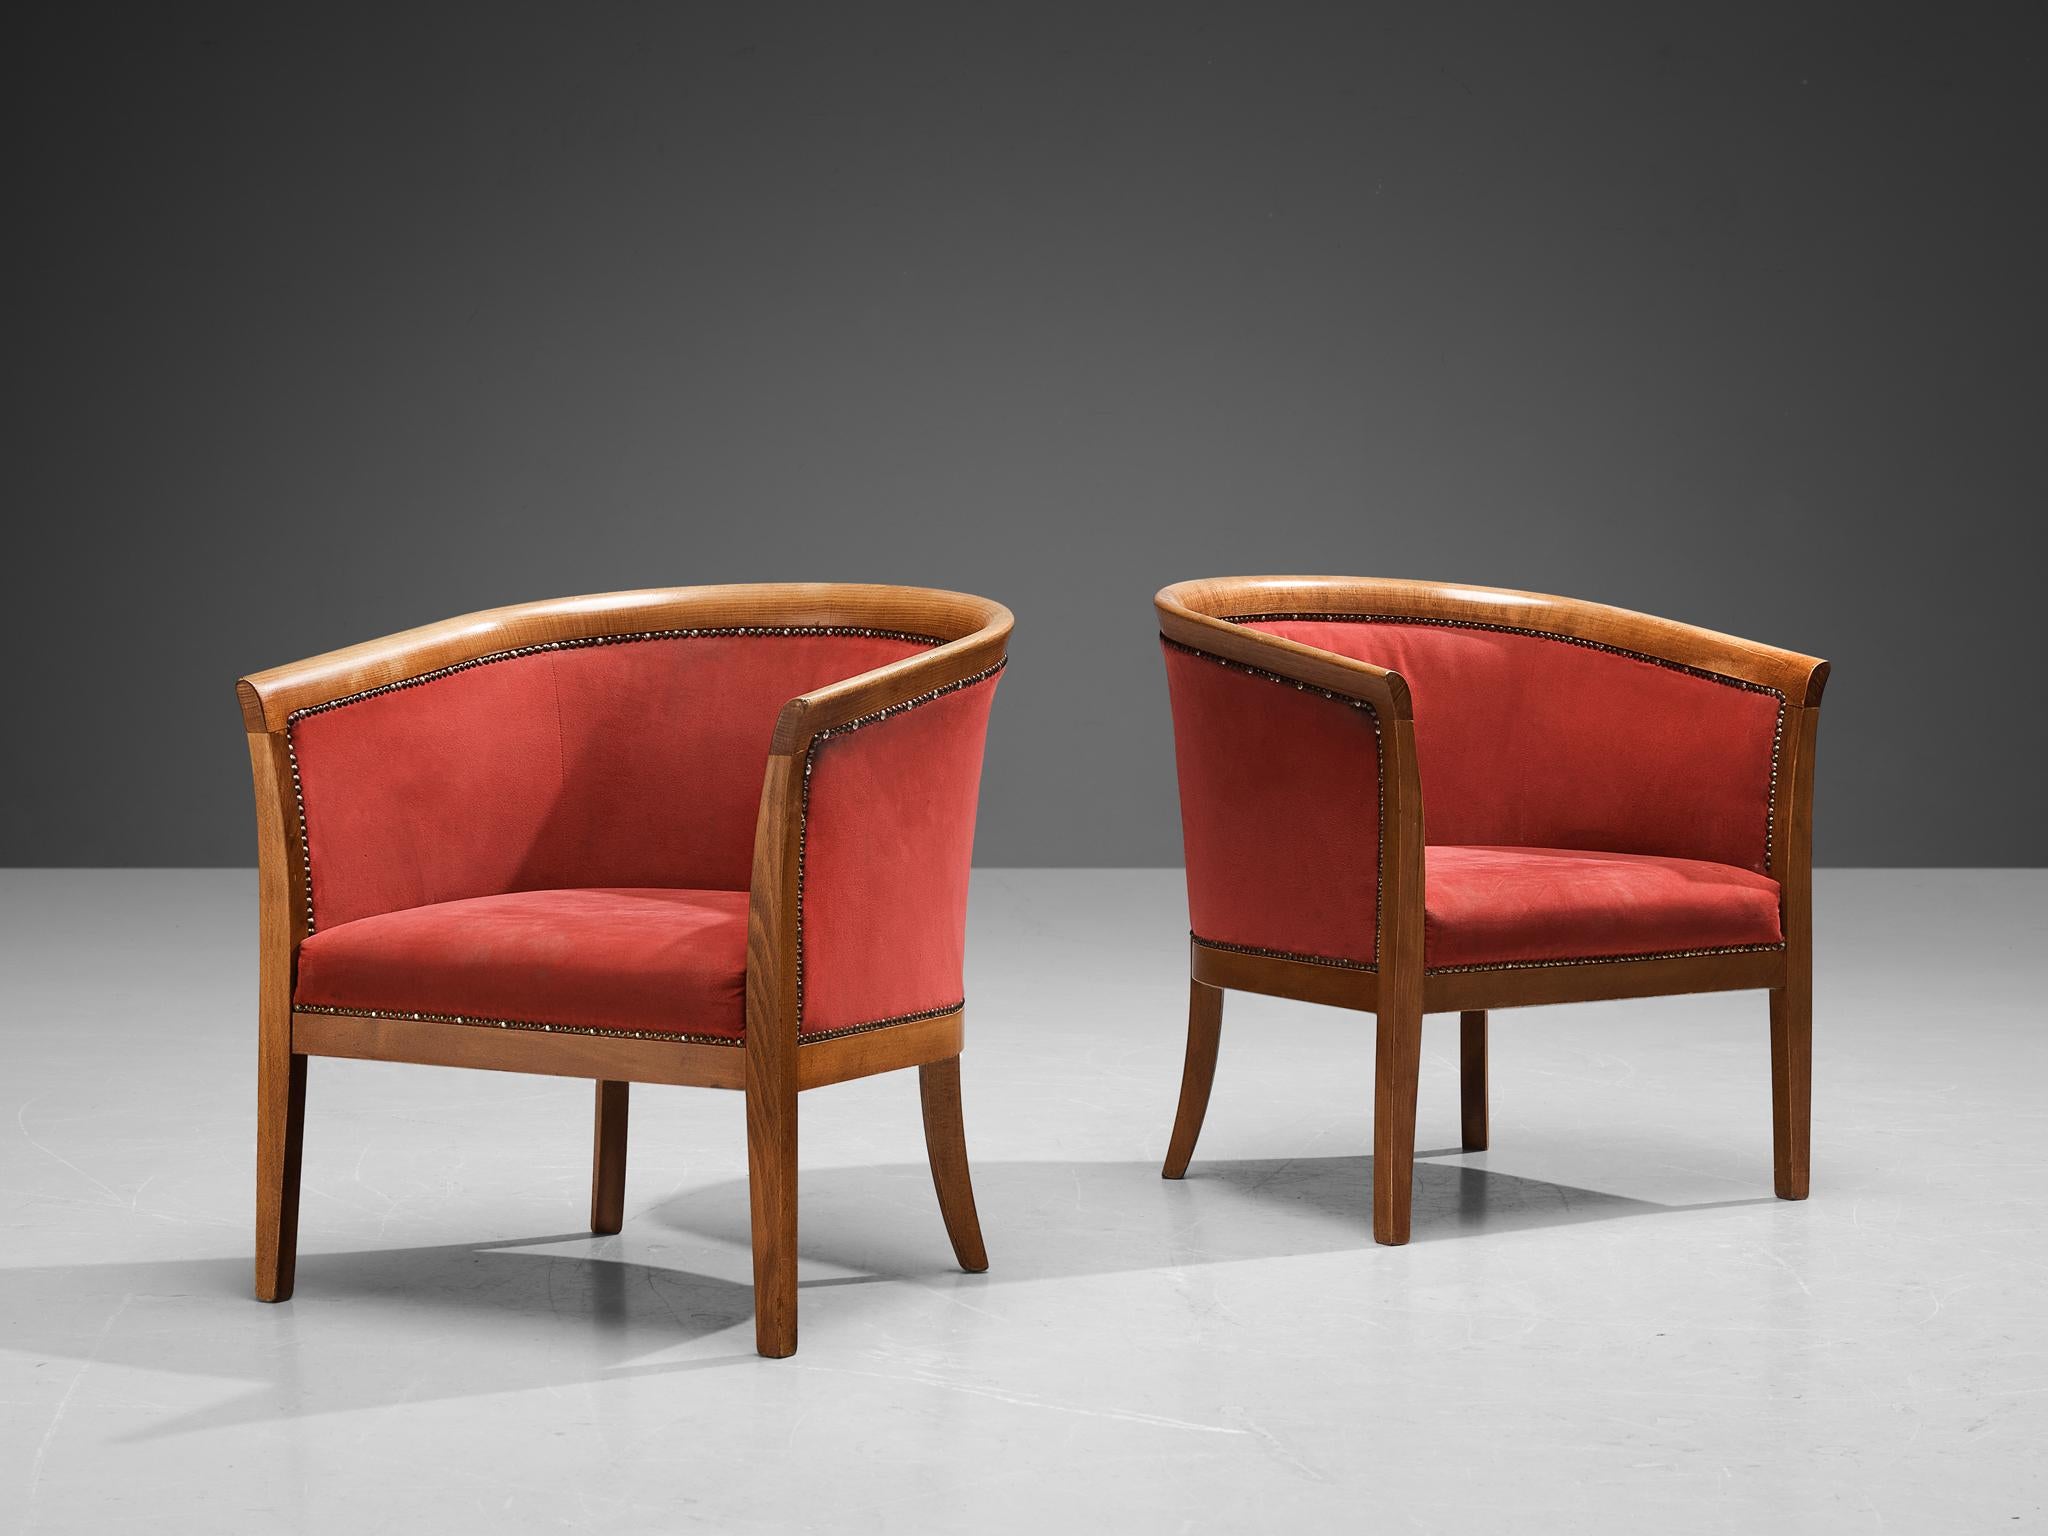 Fauteuils club, tissu rouge, hêtre, laiton, France, années 1940.

Ces fauteuils à la sculpture classique présentent des assises conçues comme une coquille, qui embrasse merveilleusement l'assis. Les lignes courbes du cadre sont encore soulignées par